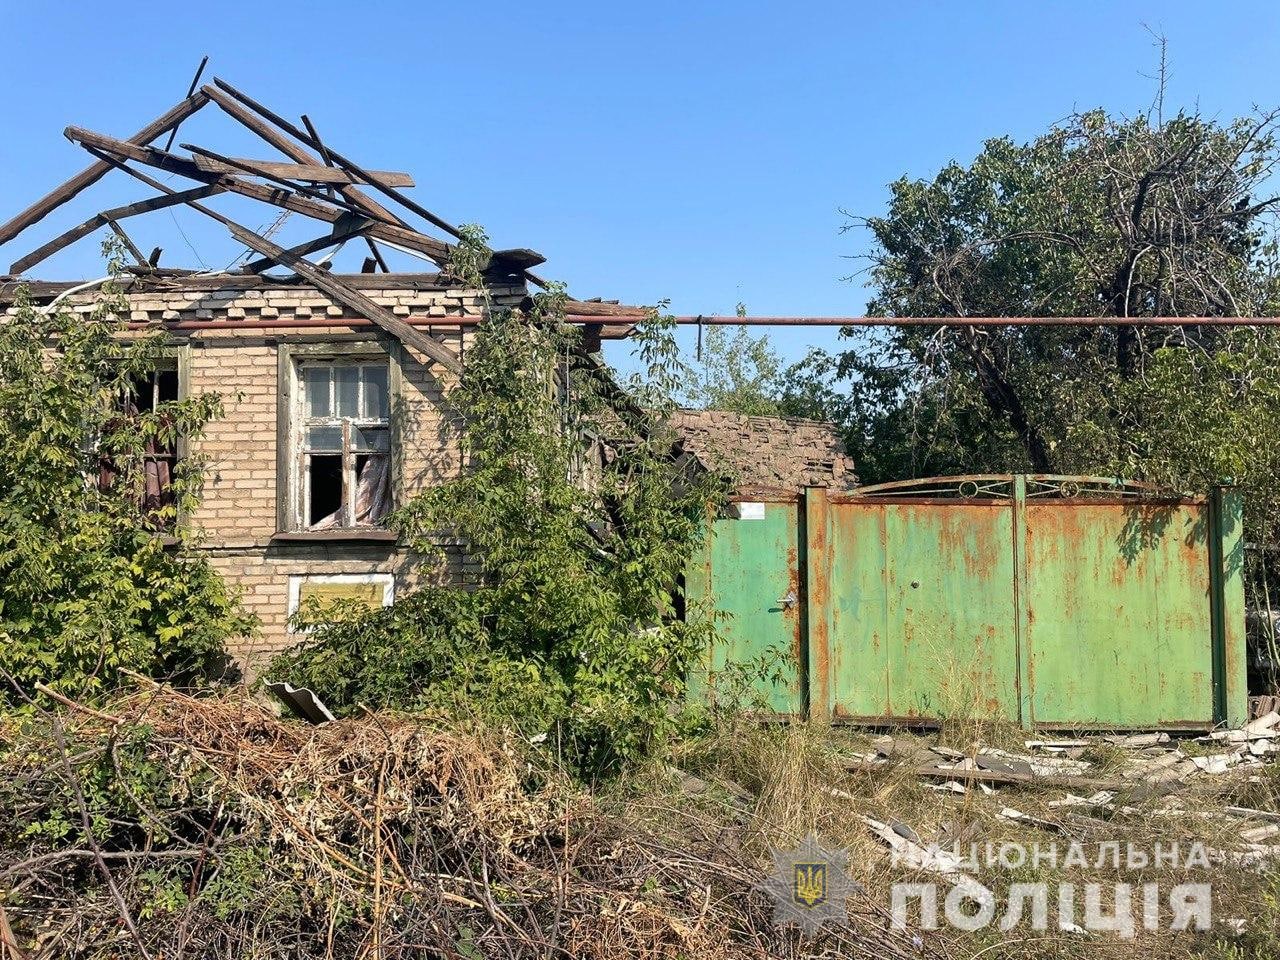 разрушенная крыша частного дома в Донецкой области